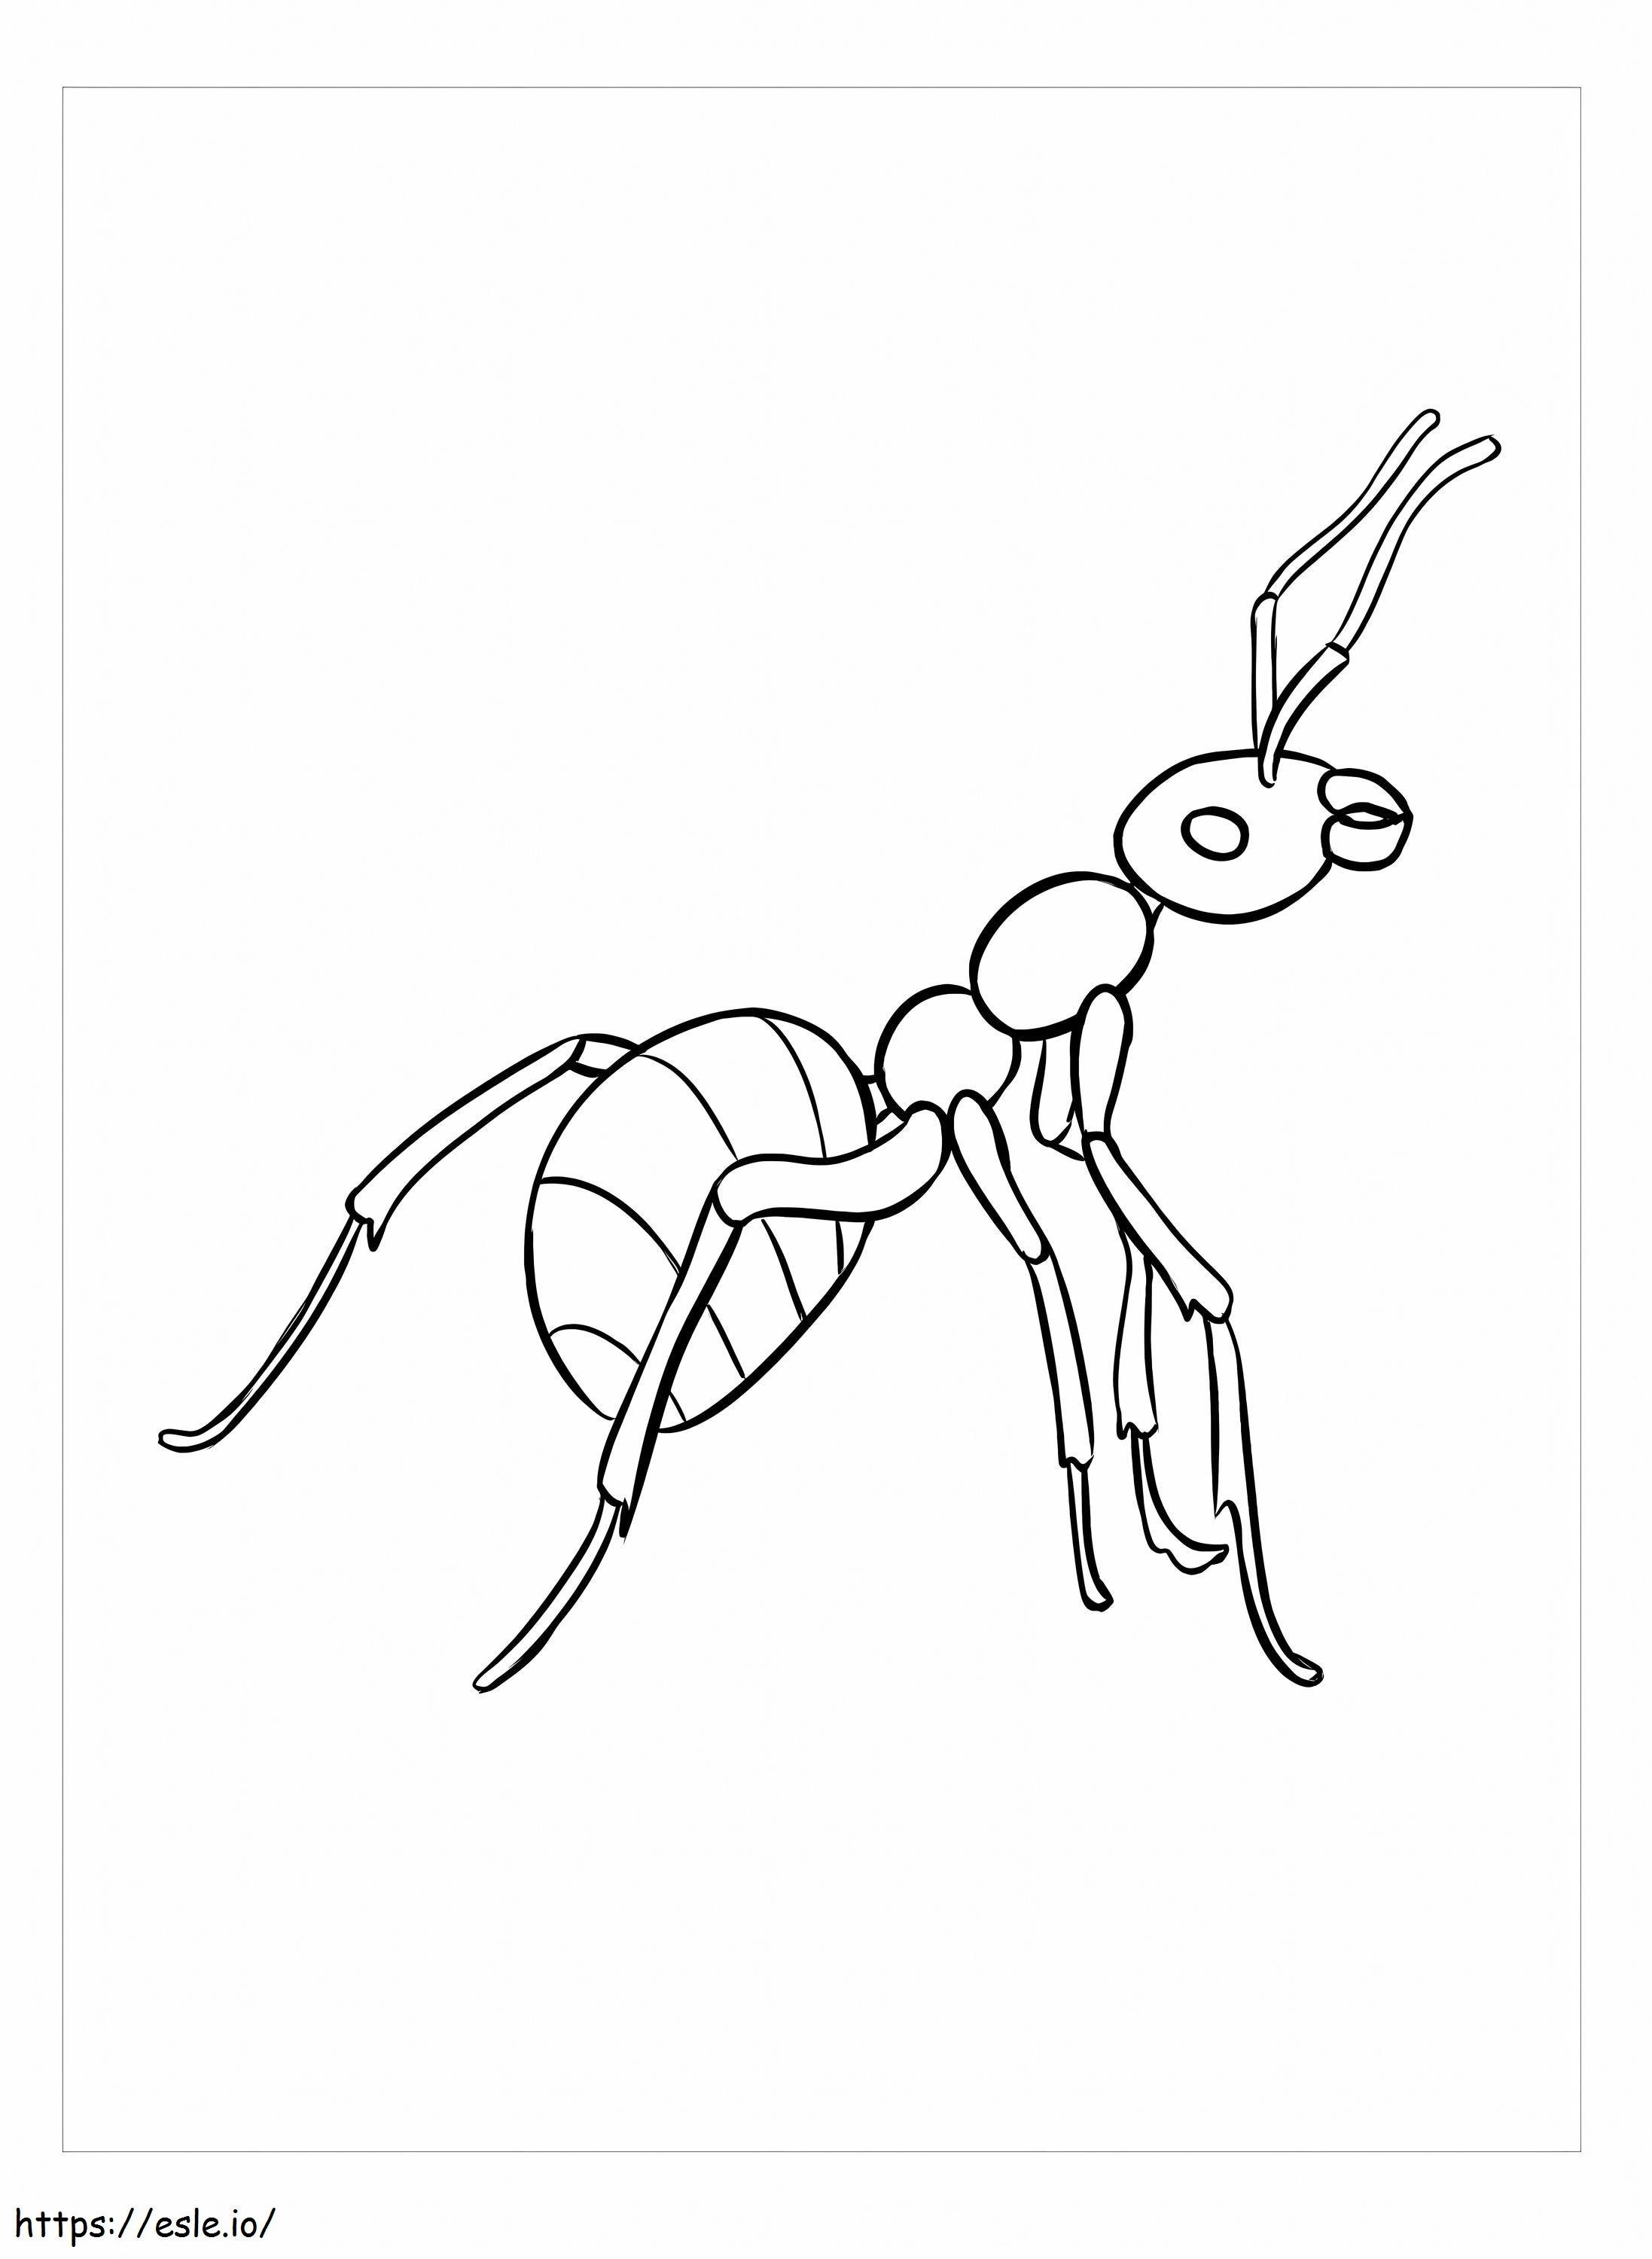 Gratis afbeeldingen van mieren kleurplaat kleurplaat